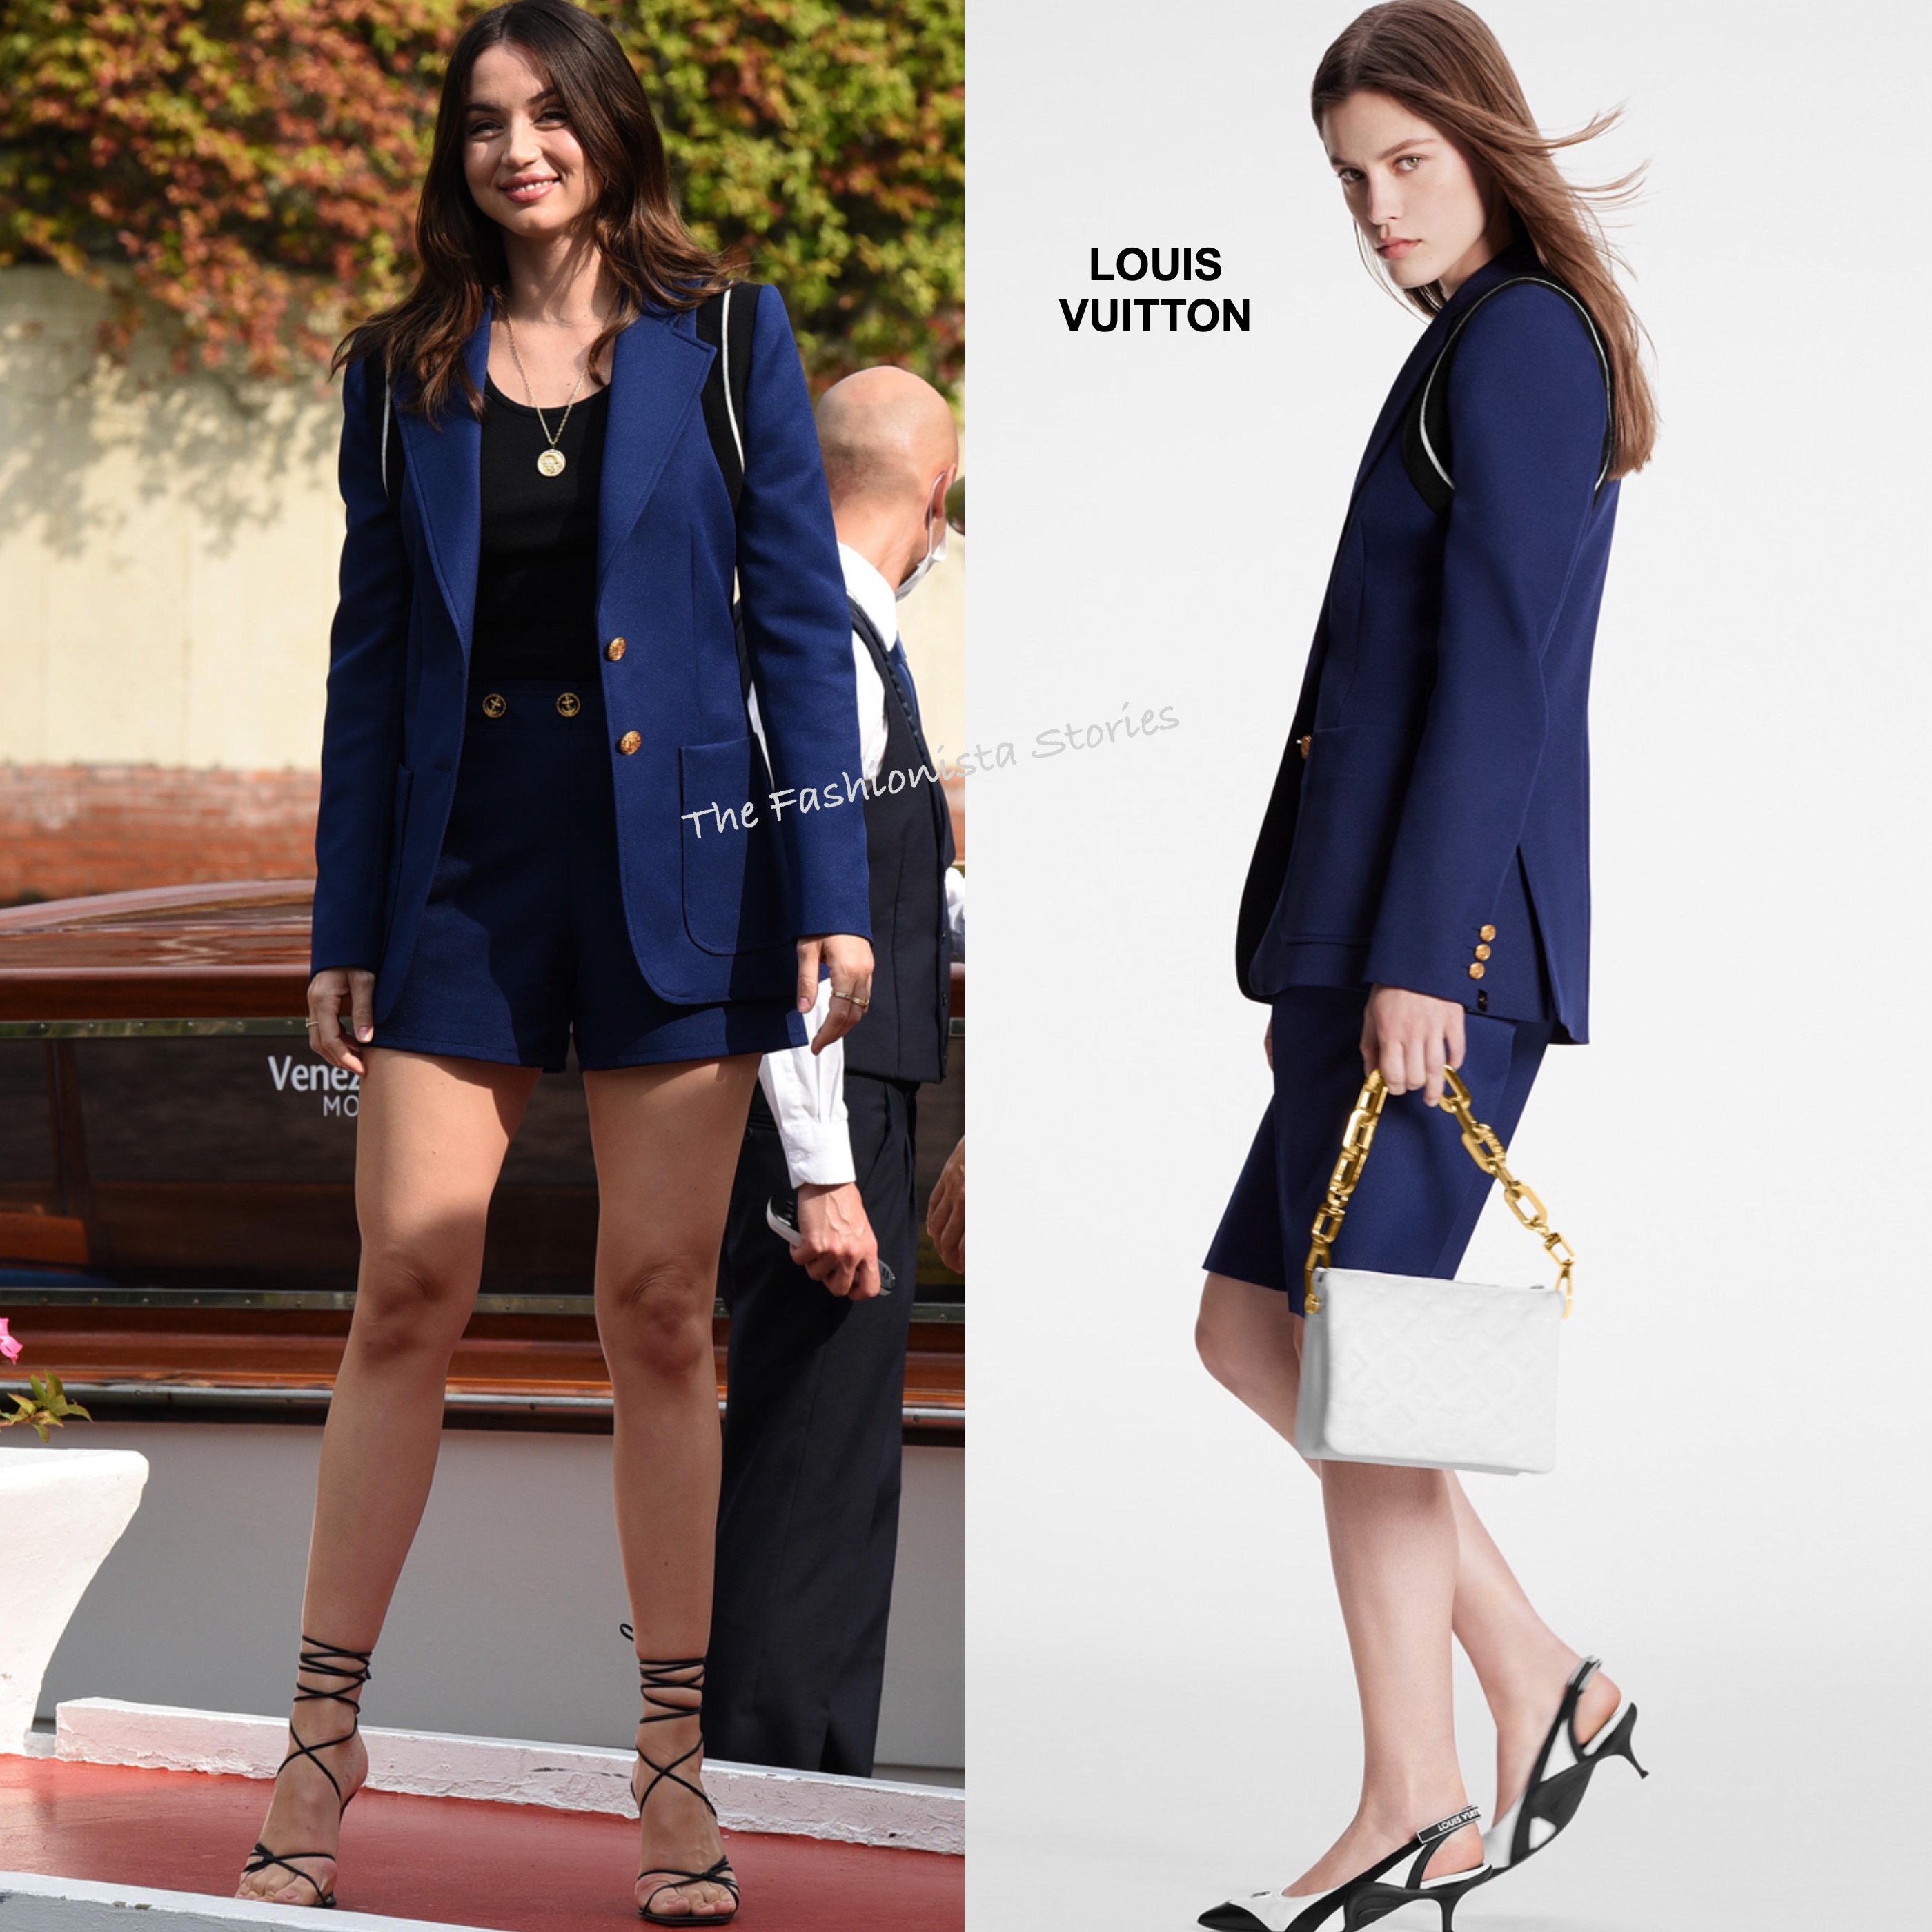 Louis Vuitton Skirt Suit - Louis Vuitton